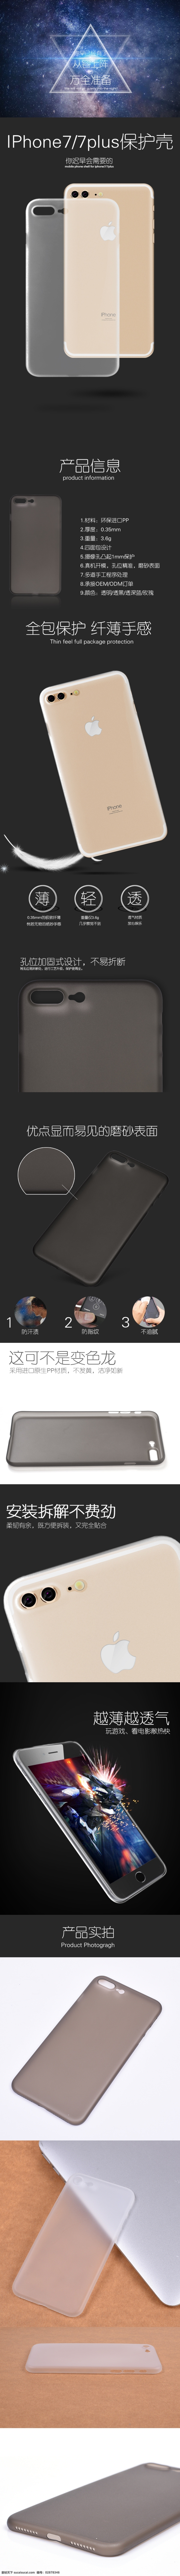 iphone7 手机壳 iphone 配件 详情页 淘宝 淘宝界面设计 广告 banner